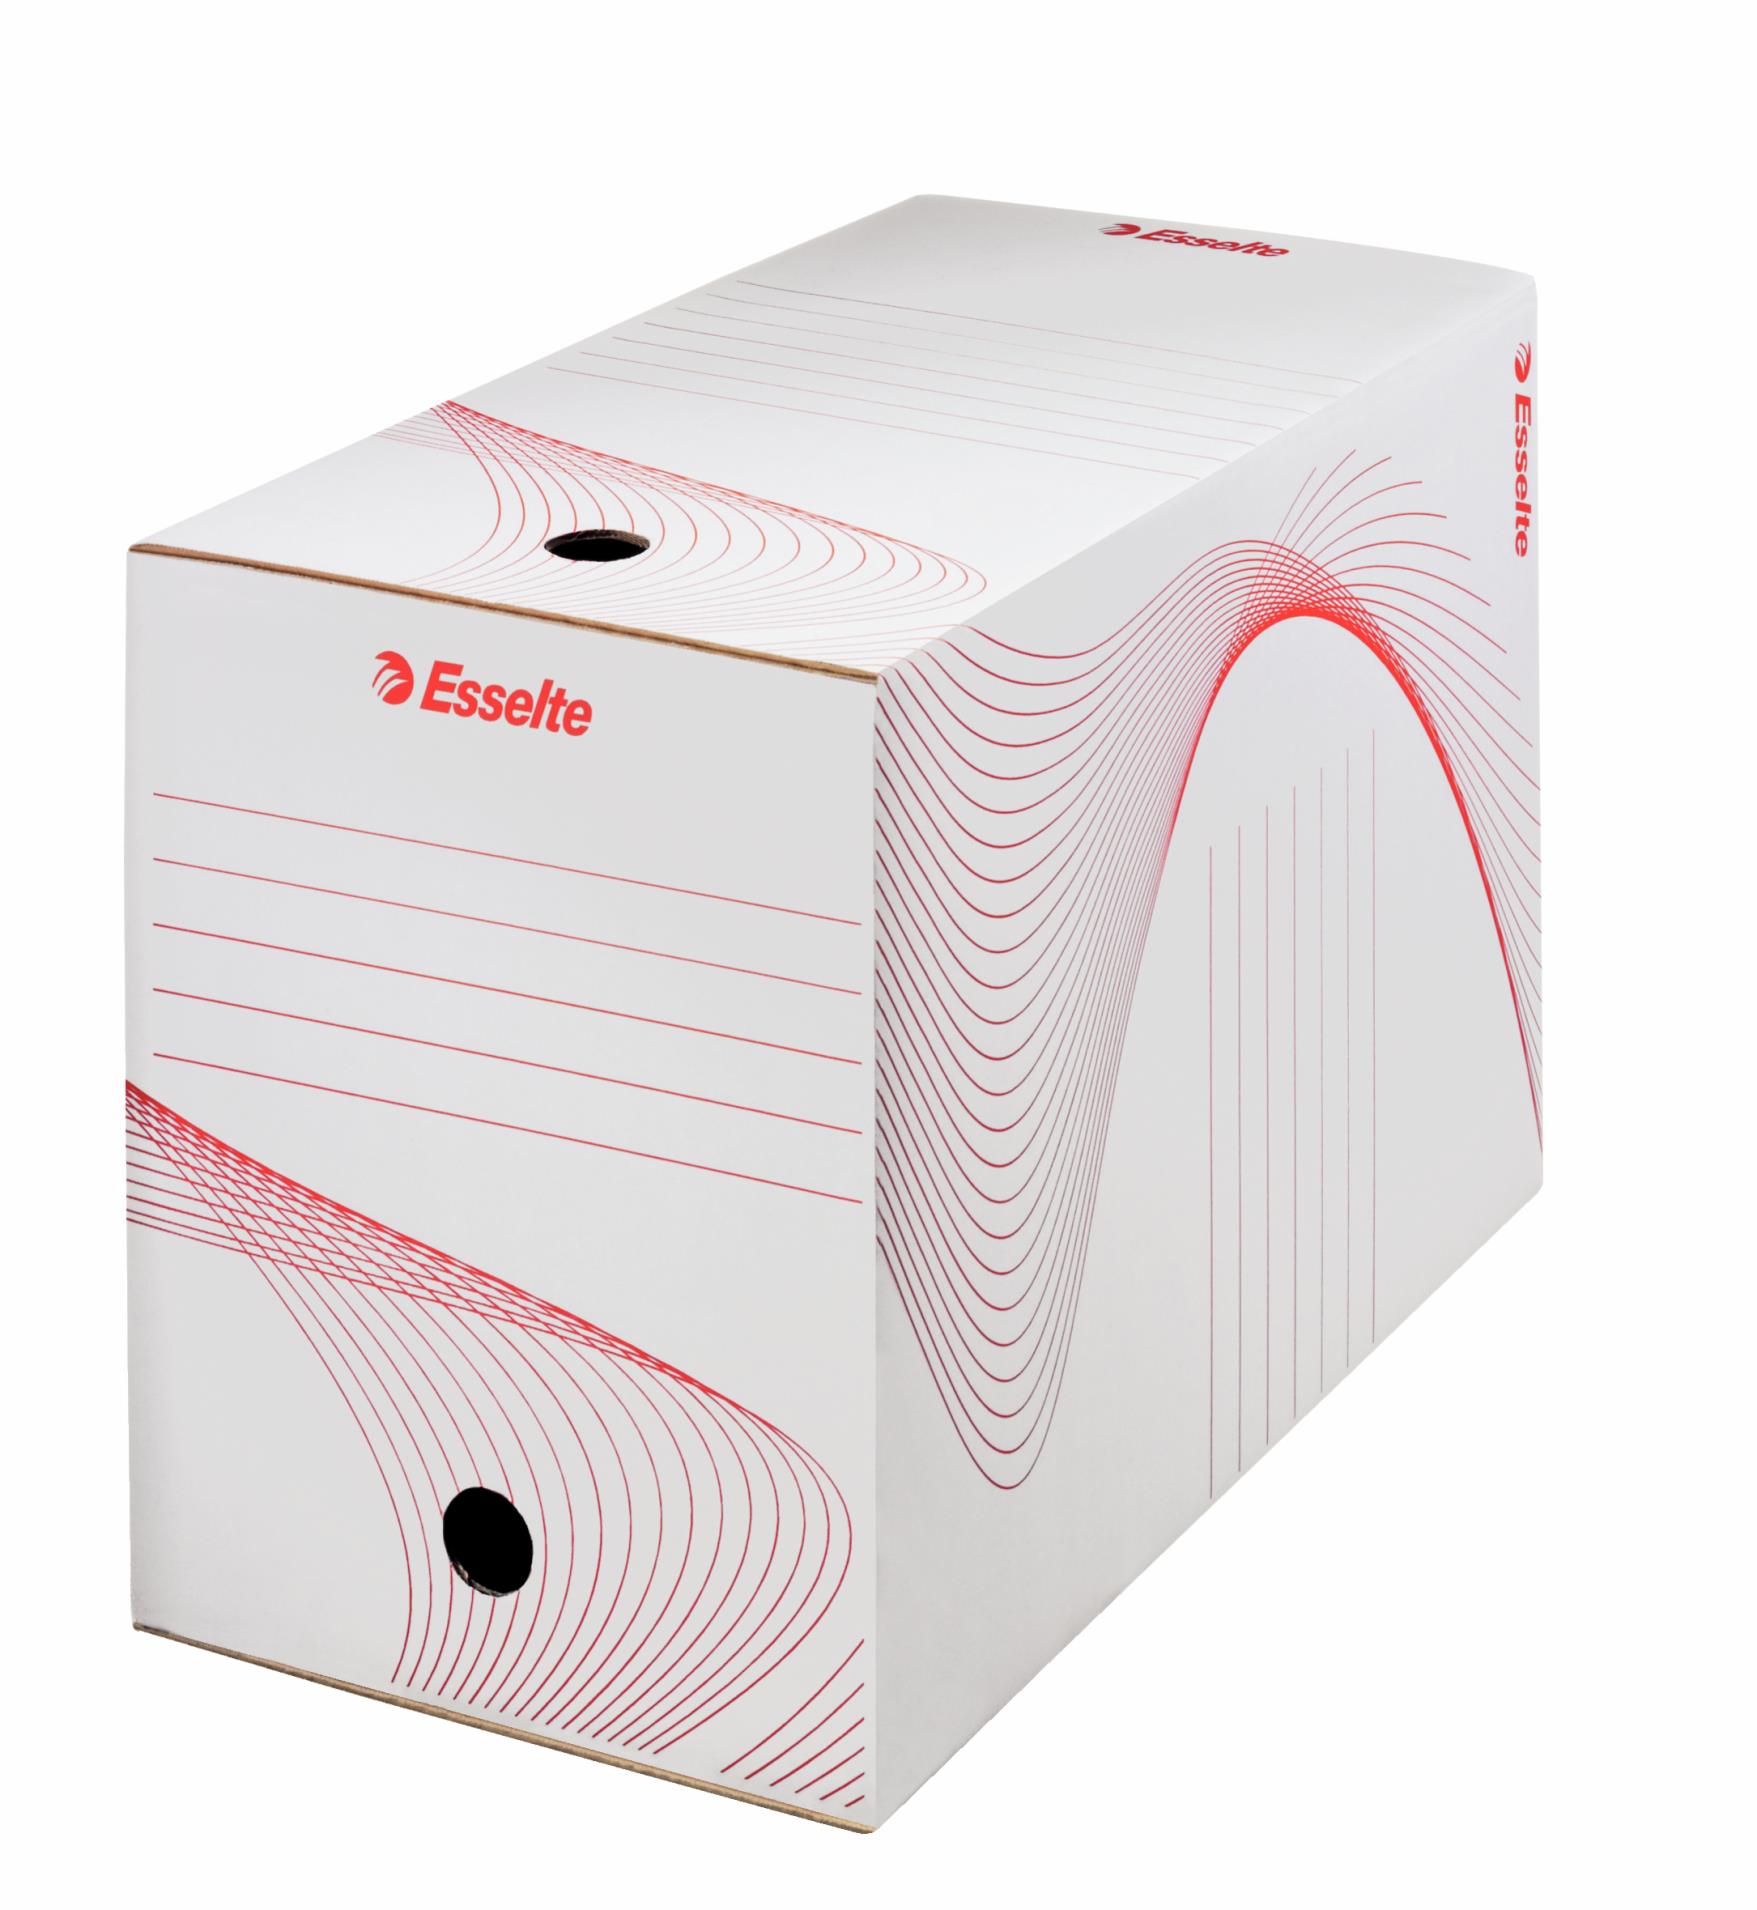 Archivační krabice Esselte - 20,0 x 25,0 x 35,2 cm, bílá